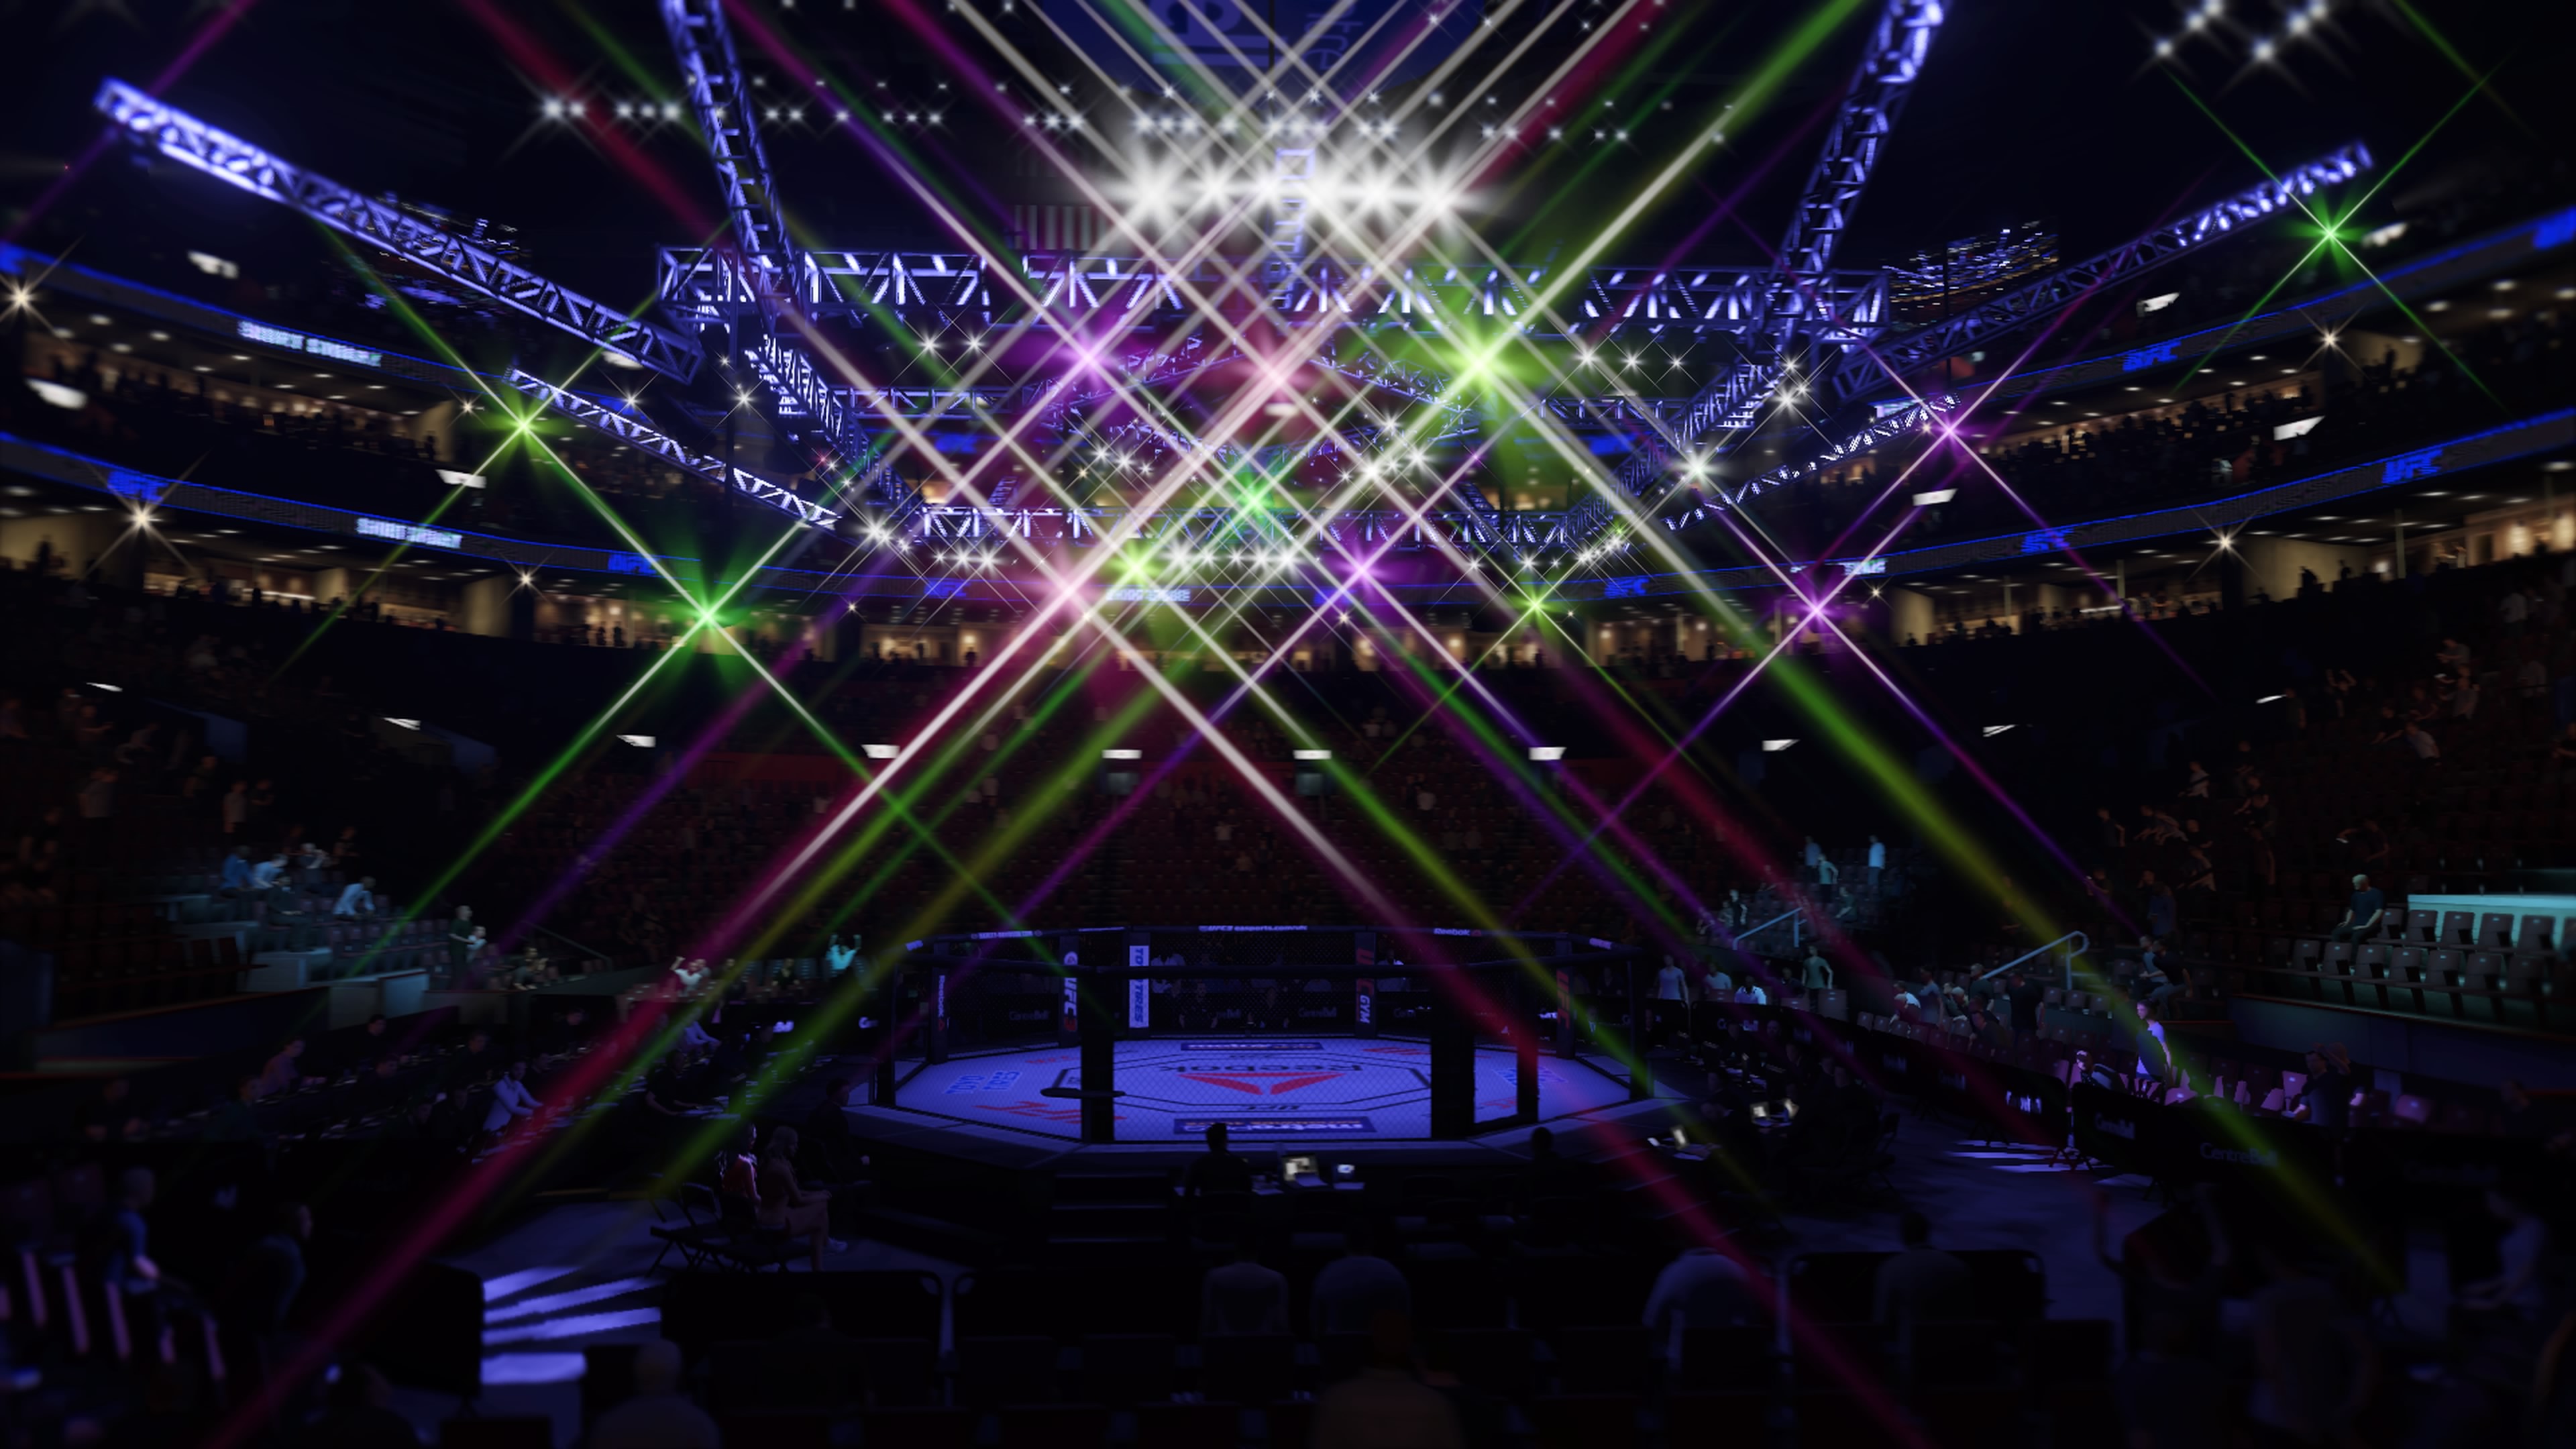 UFC 3 - Bright lights